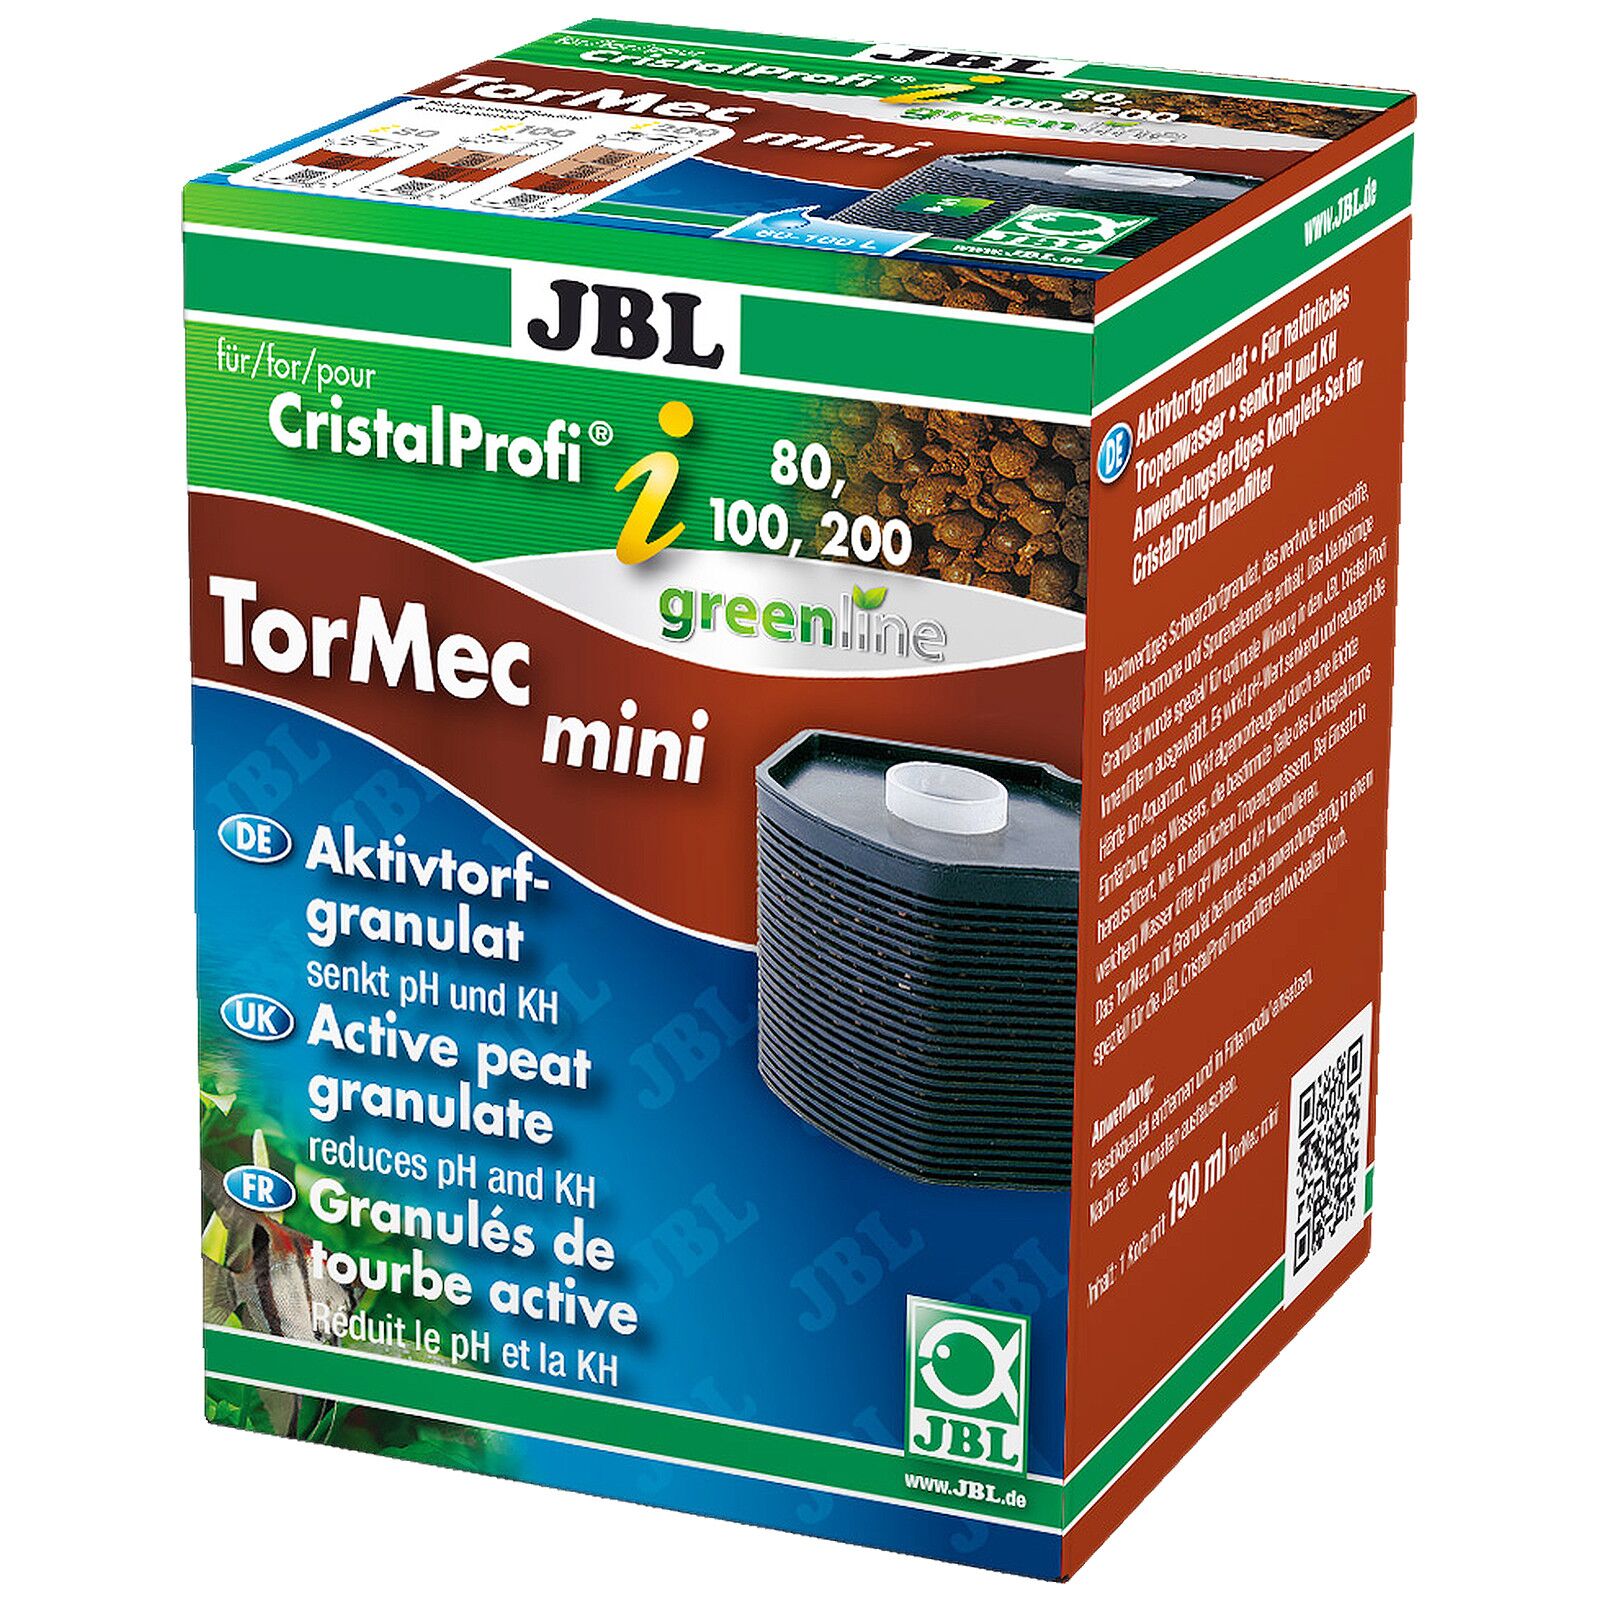 JBL - Tormec - CristalProfi i60/80/100/200